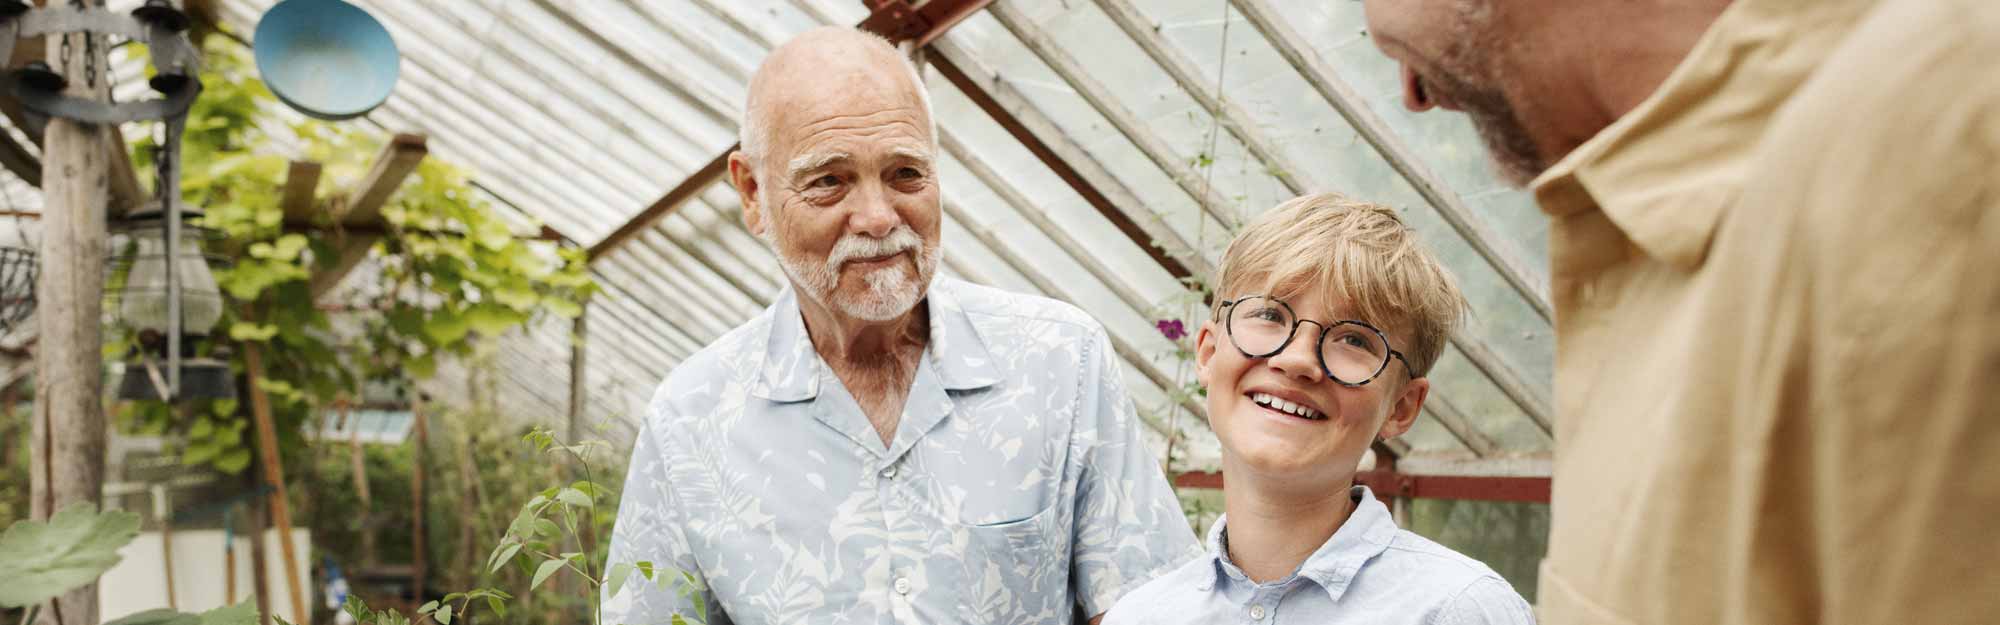 Tre personer i olika åldrar möts i växthuset